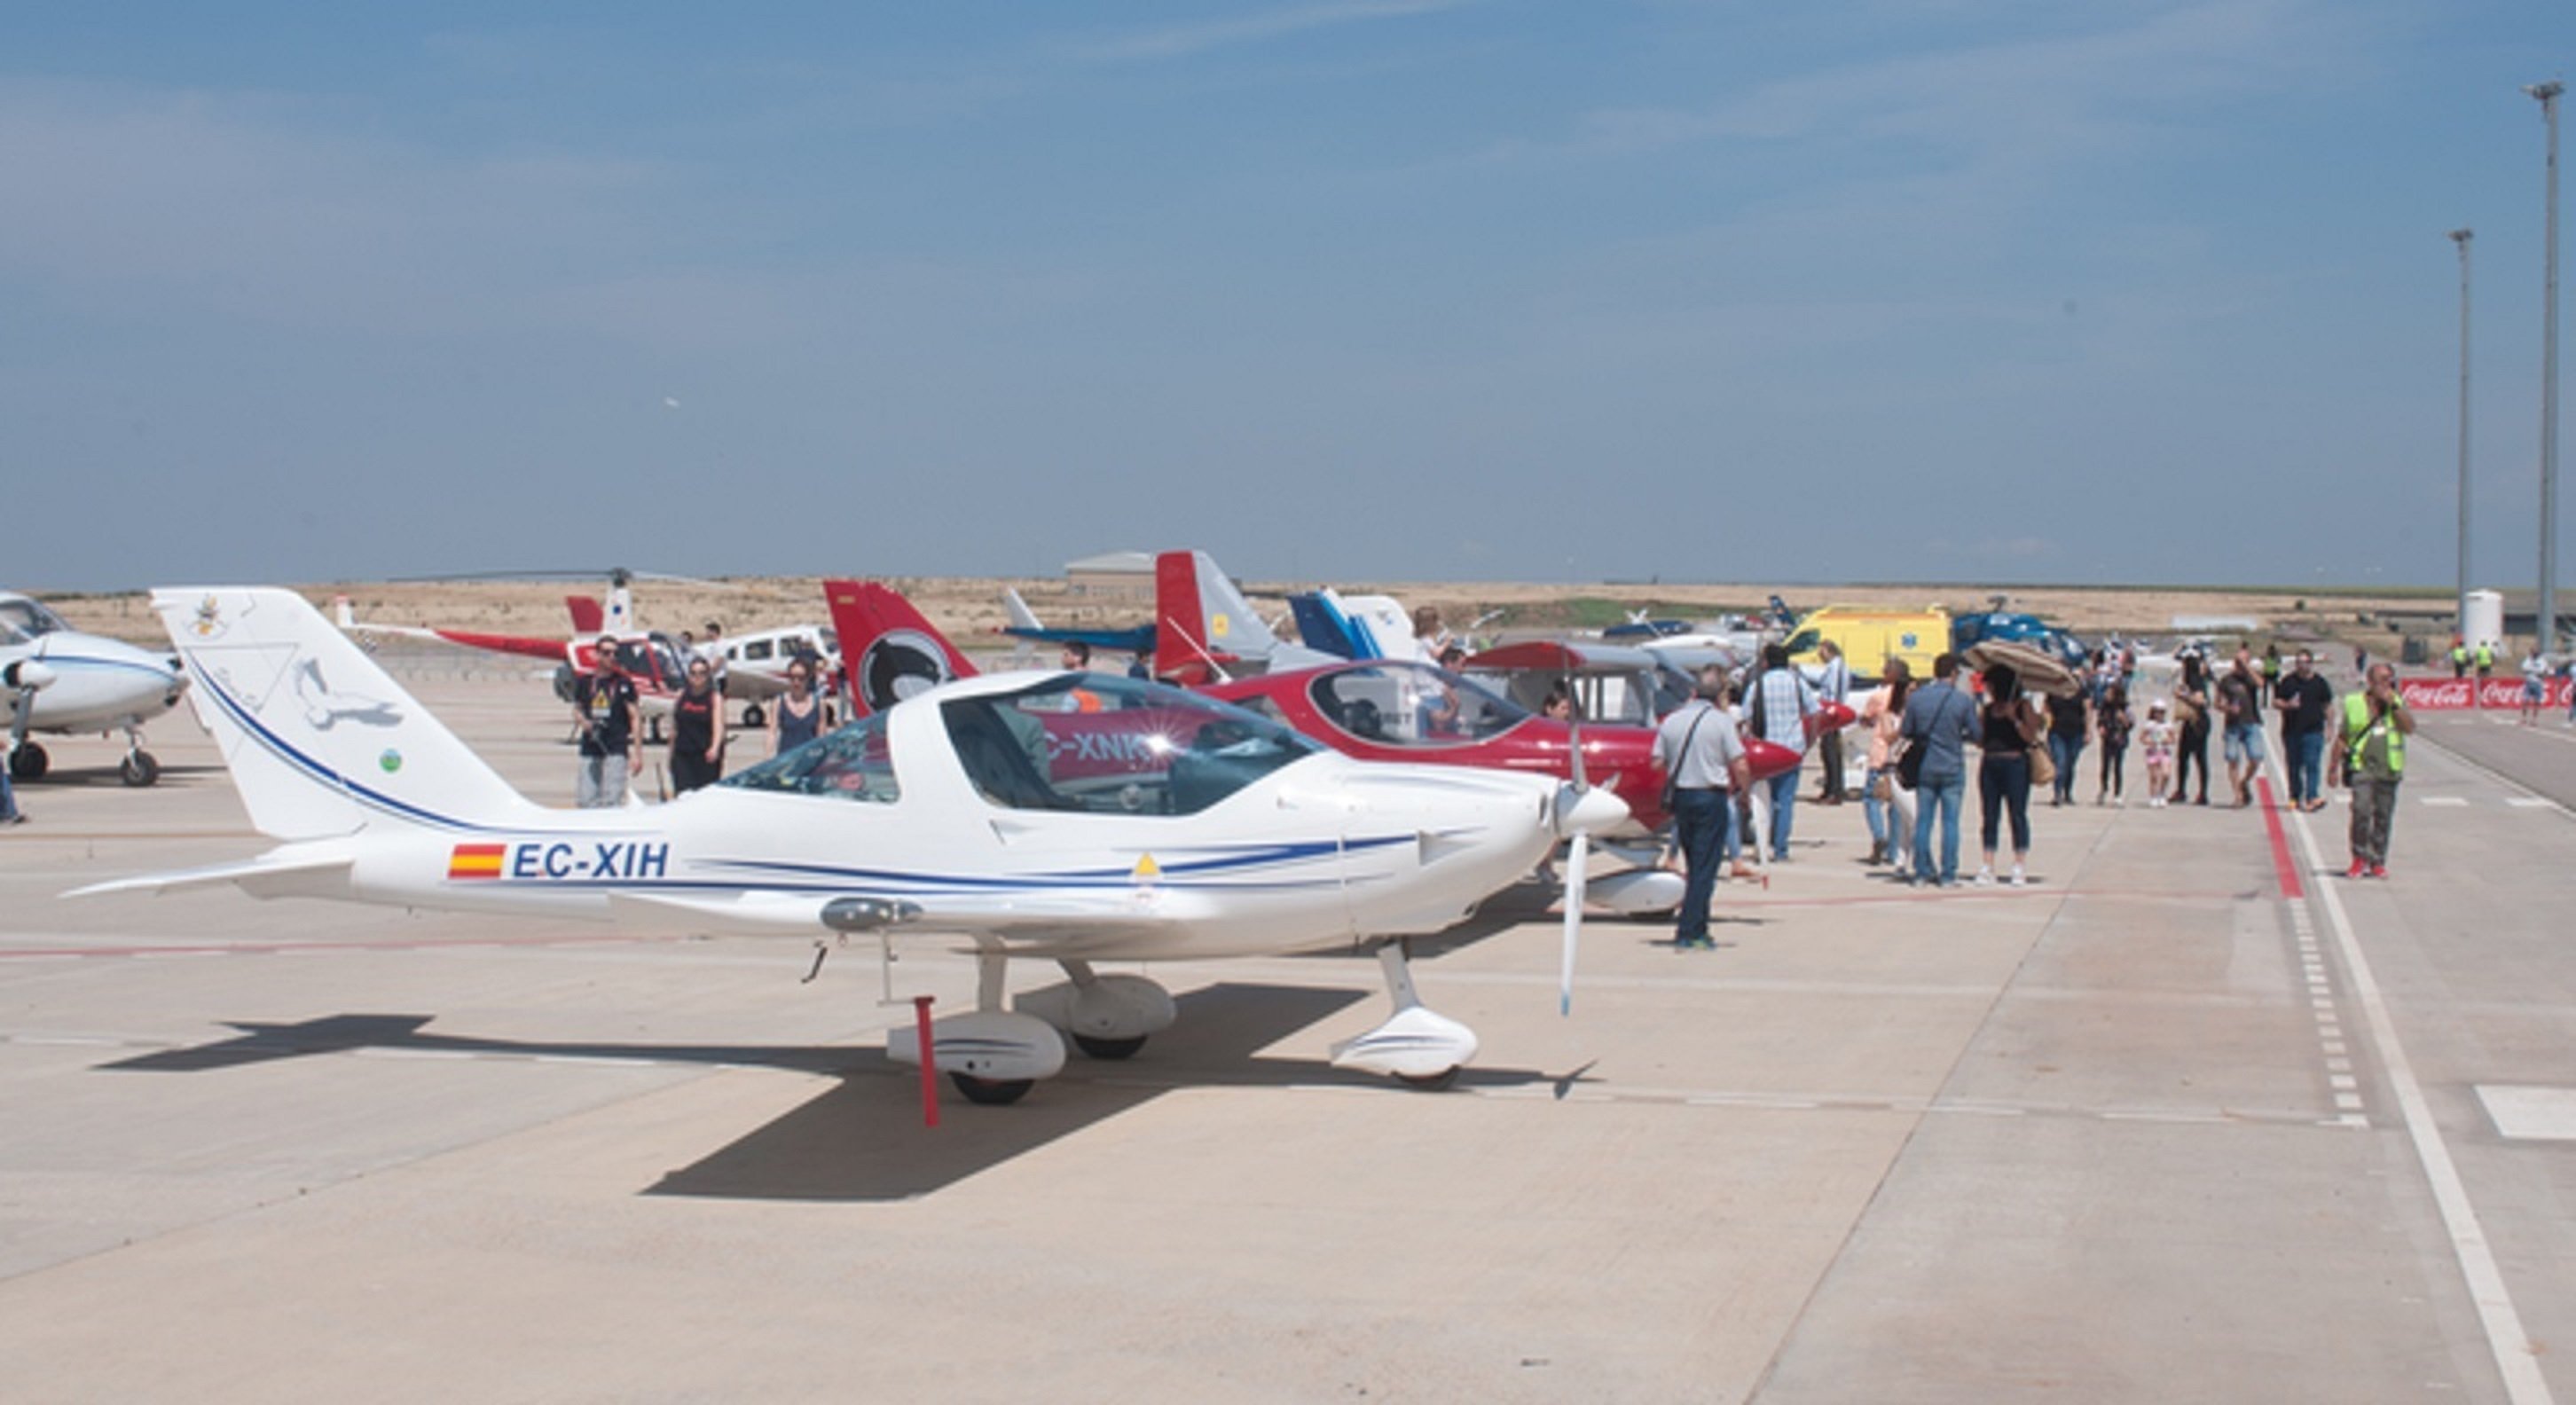 El aeropuerto de Lleida-Alguaire acoge la feria aeronáutica LleidaAirChallenge